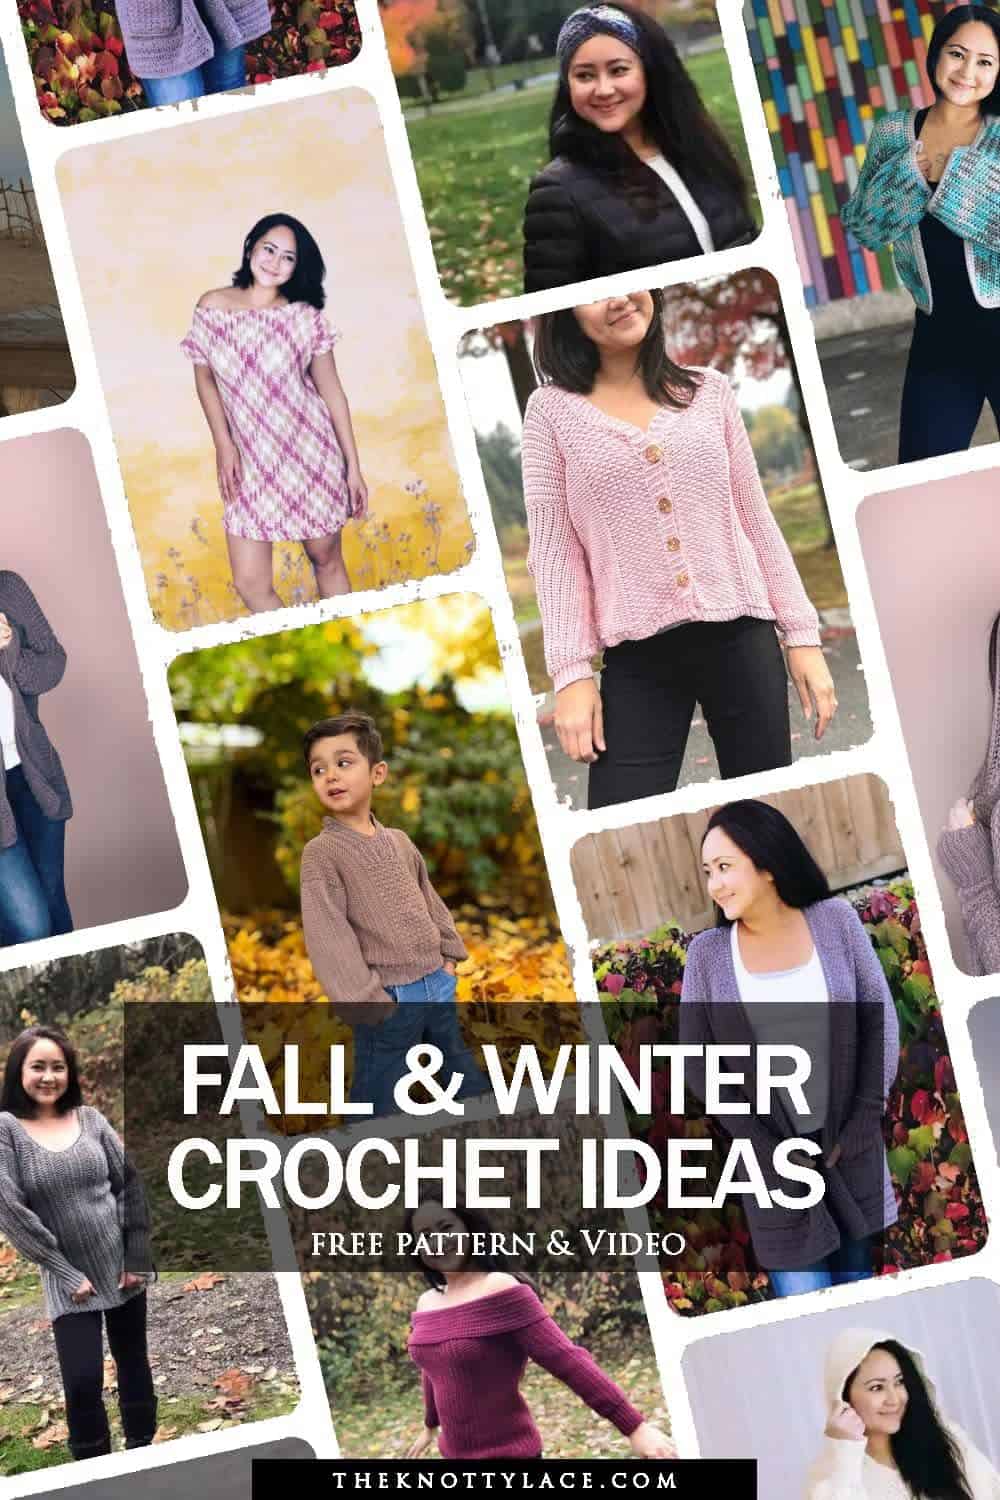 Fall winter crochet ideas free pattern & video